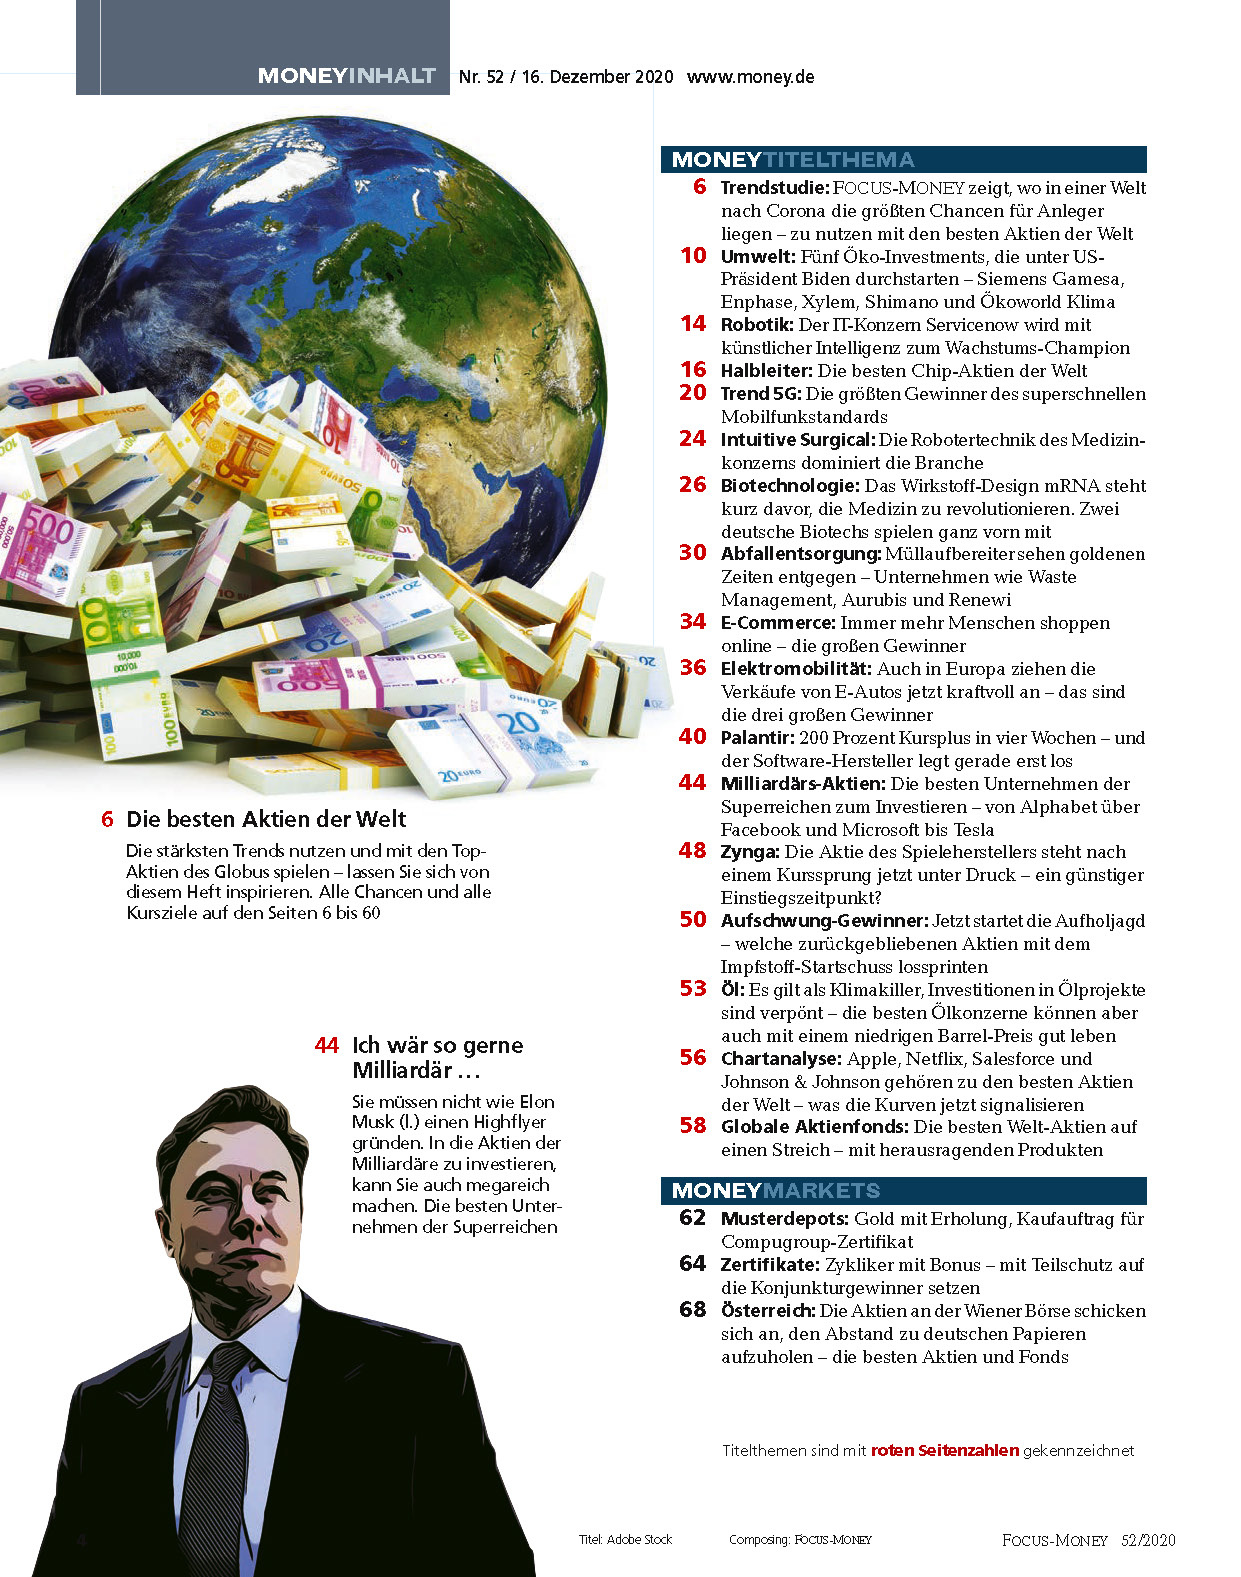 Focus Money Die Besten Aktien Der Welt Ein Ganzes Heft Mit Top Werten Focus Online Pdf Shop